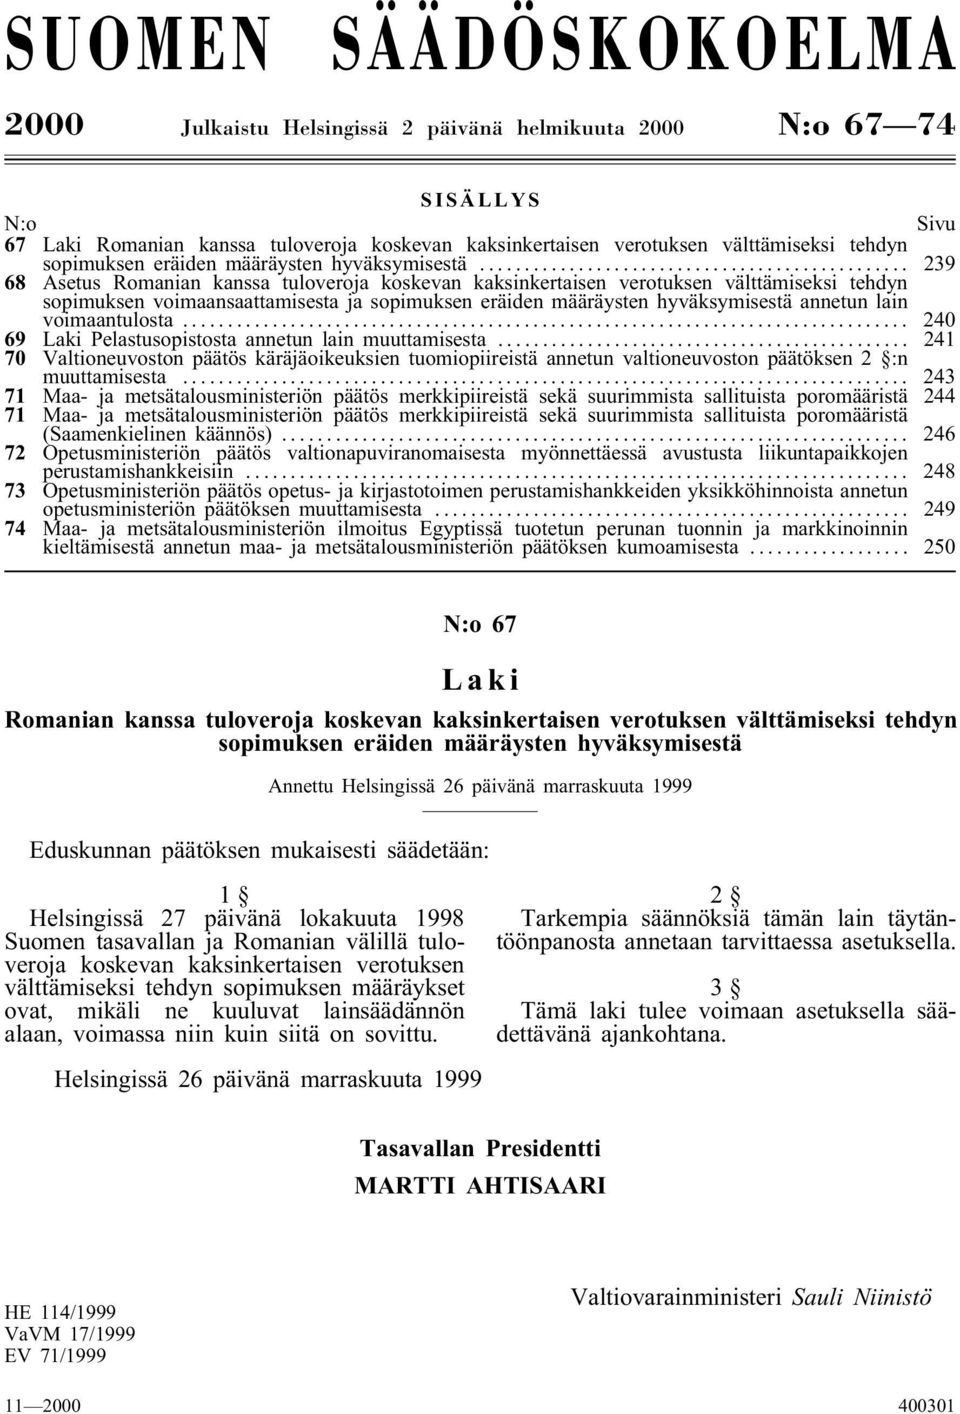 .. 239 68 Asetus Romanian kanssa tuloveroja koskevan kaksinkertaisen verotuksen välttämiseksi tehdyn sopimuksen voimaansaattamisesta ja sopimuksen eräiden määräysten hyväksymisestä annetun lain